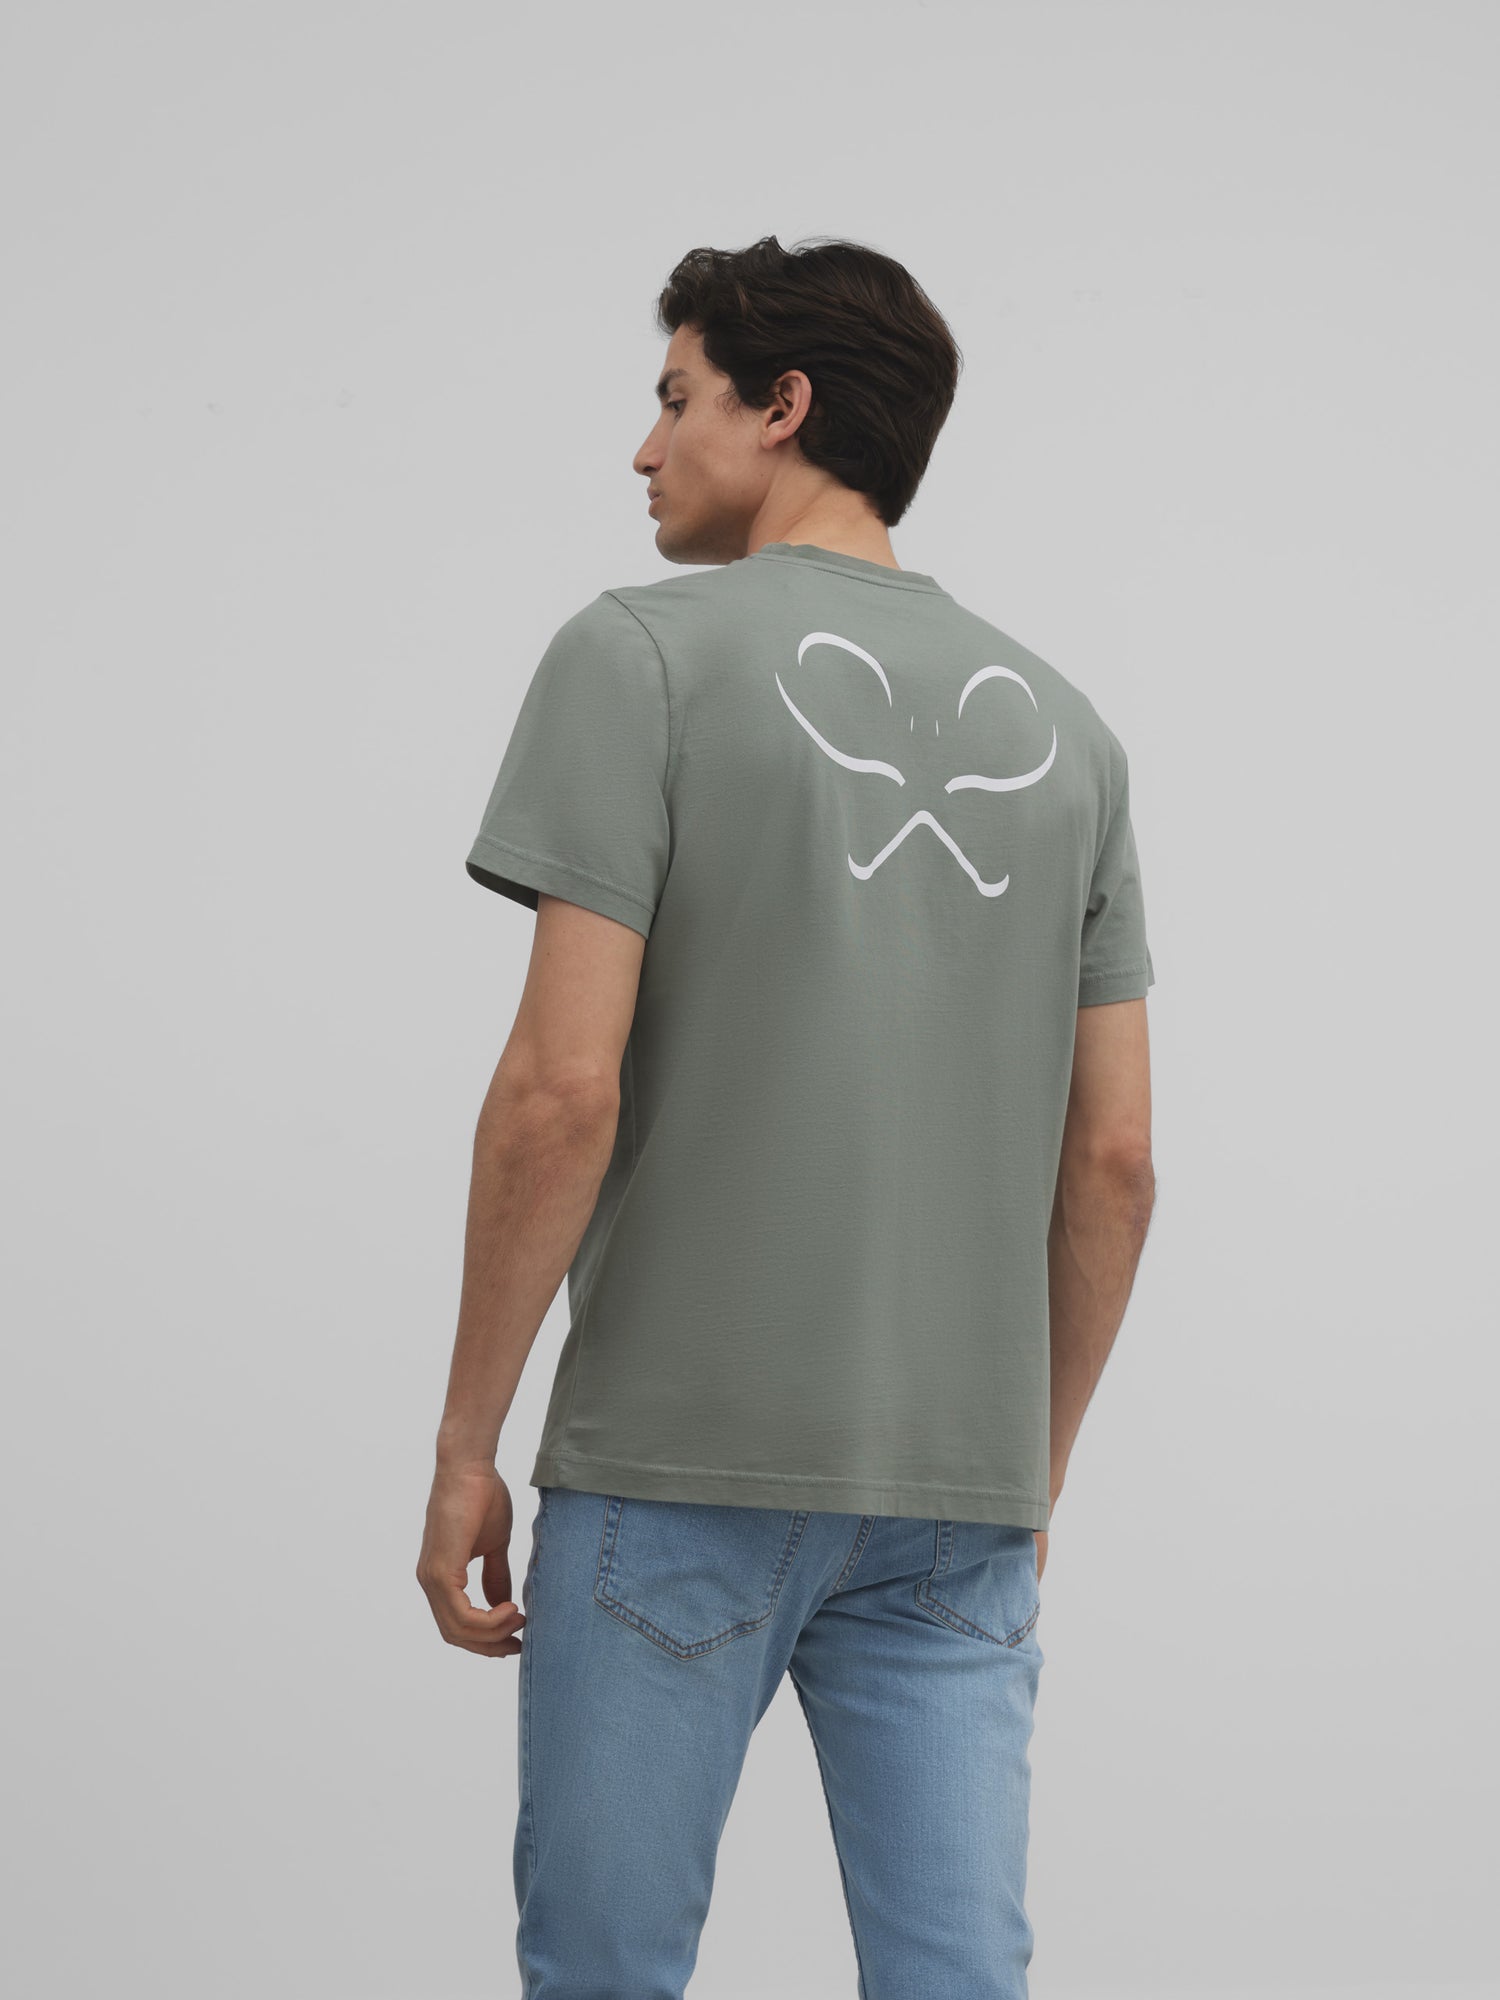 Silbon green back racket t-shirt